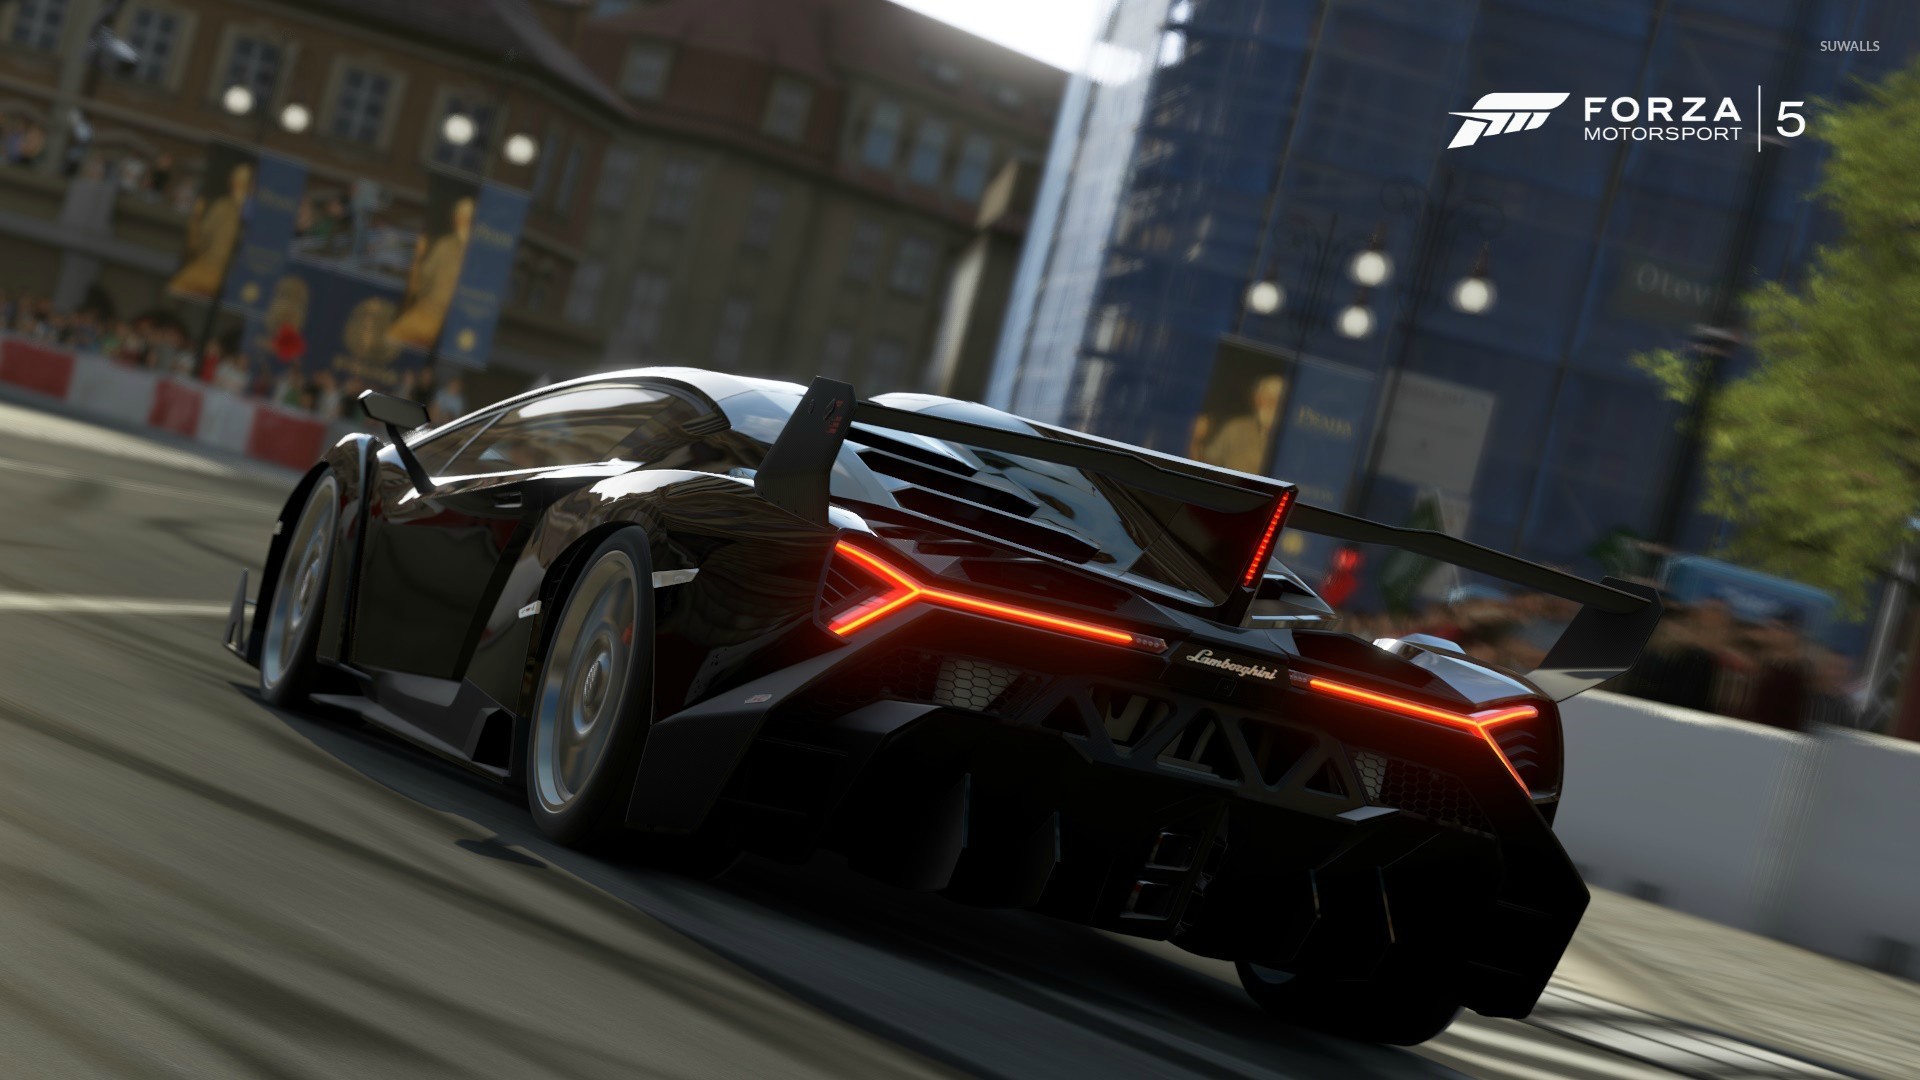 Forza 5 last game. Форза 5. Хорайзон 5. Forza Motorsport 5. Forza Horizon 5.